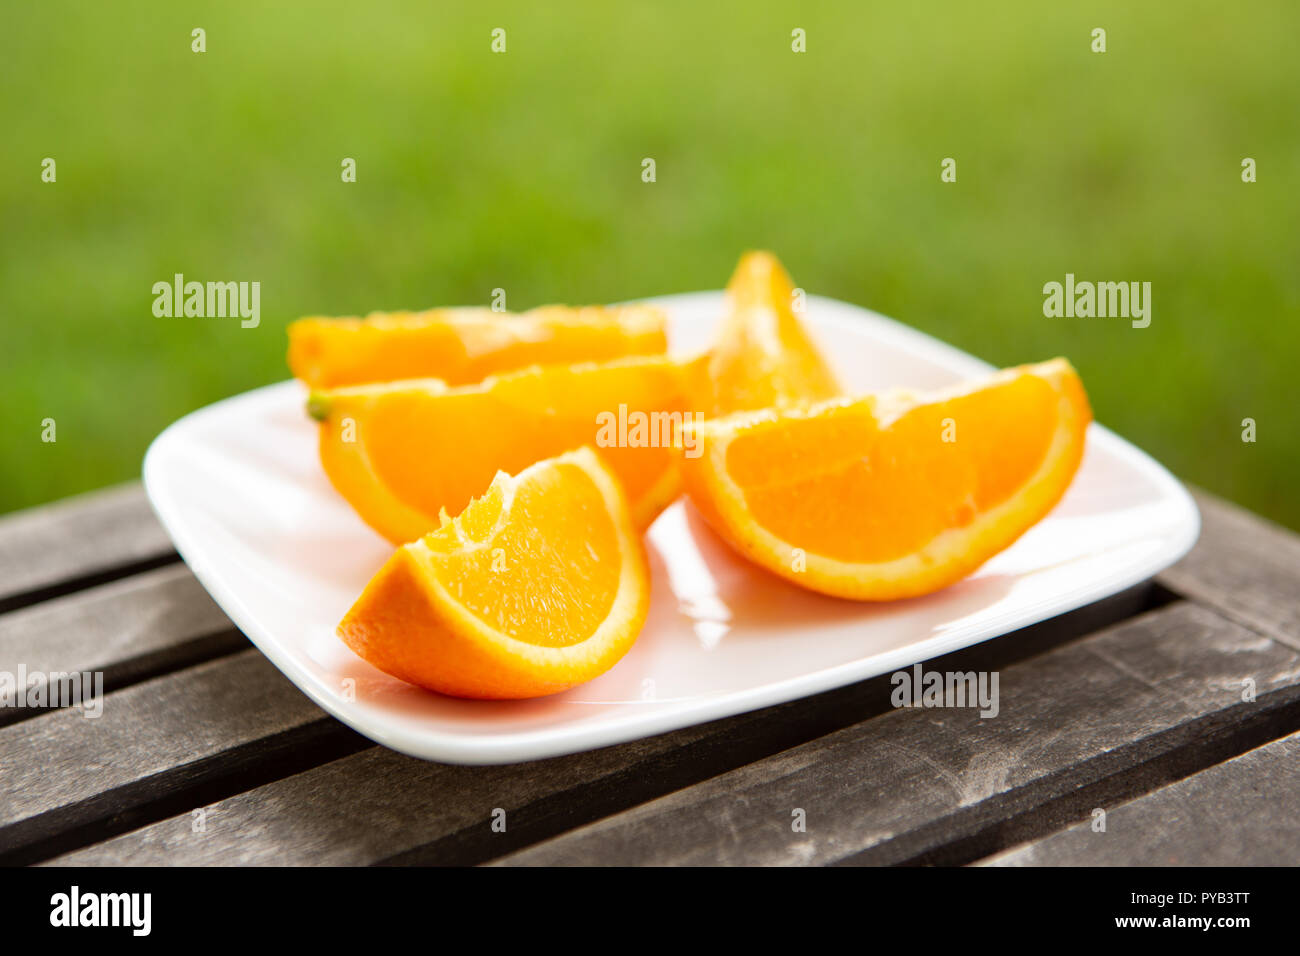 Cunei arancione sulla piastra bianca impostato sulla superficie di legno con sfondo verde Foto Stock